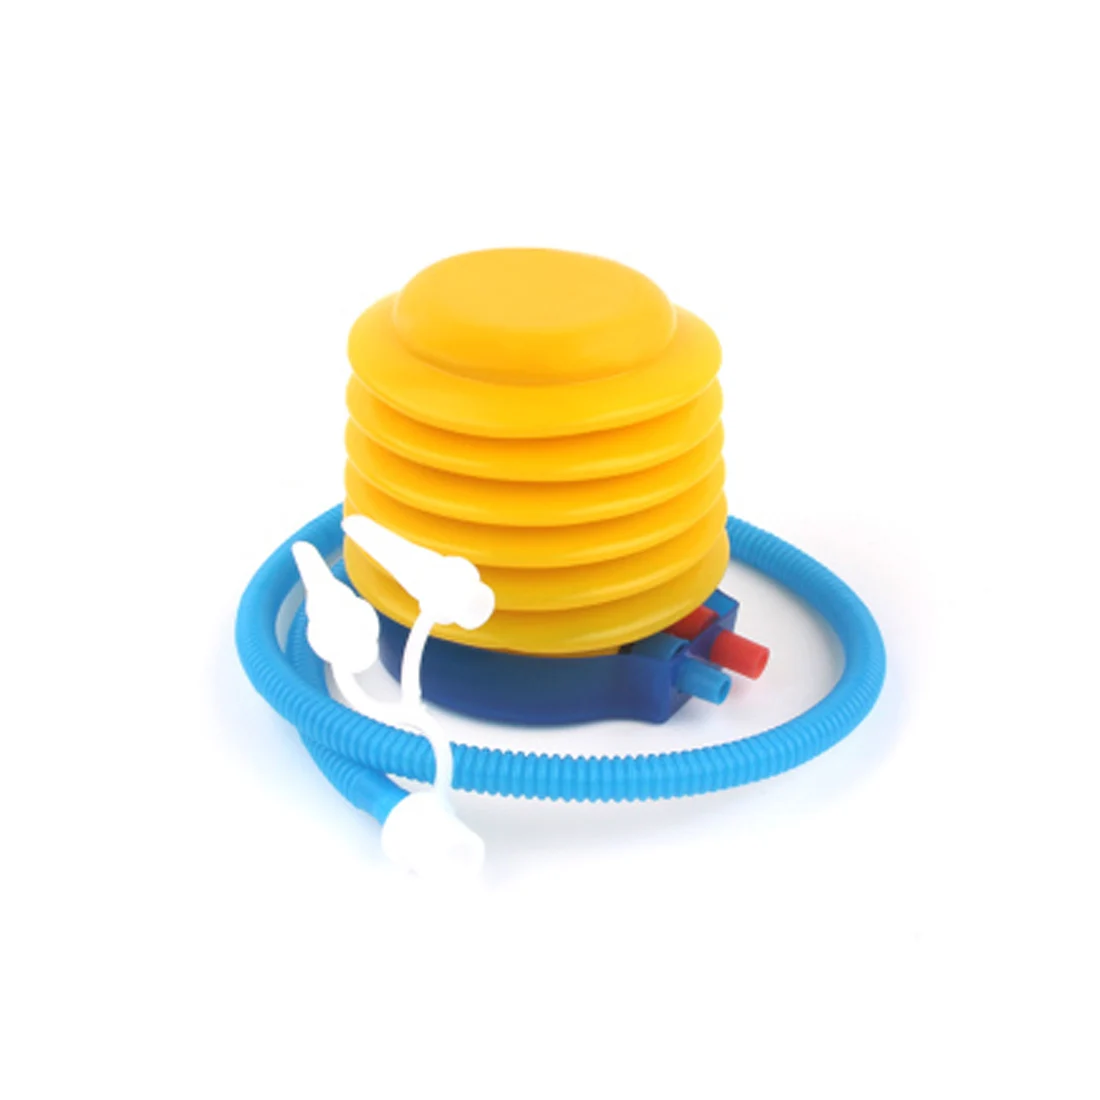 Пластиковый удобный воздушный шар надувной насос надувной цилиндр ручной толчок ног прыжки воздушные шары наполнение насос детская игрушка инструмент H